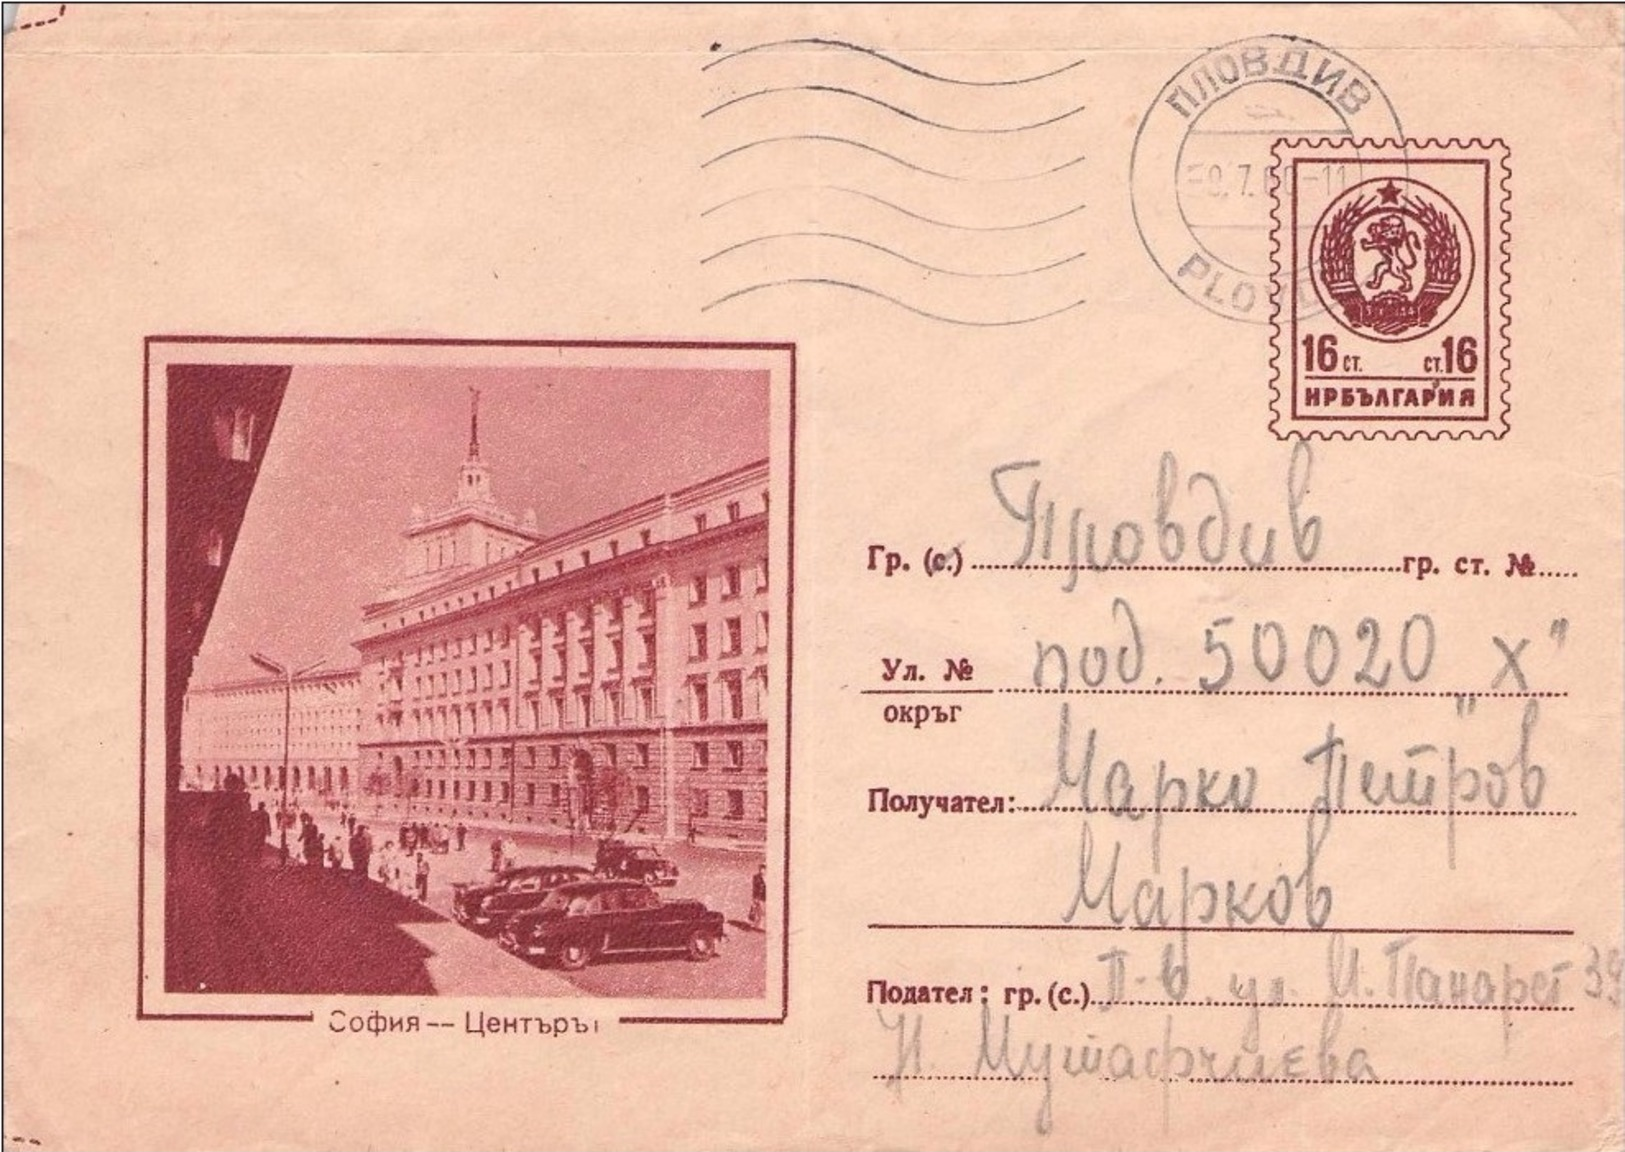 BULGARIA - ENVELOPE 1960 16  ST. Mi #U60 - Briefe